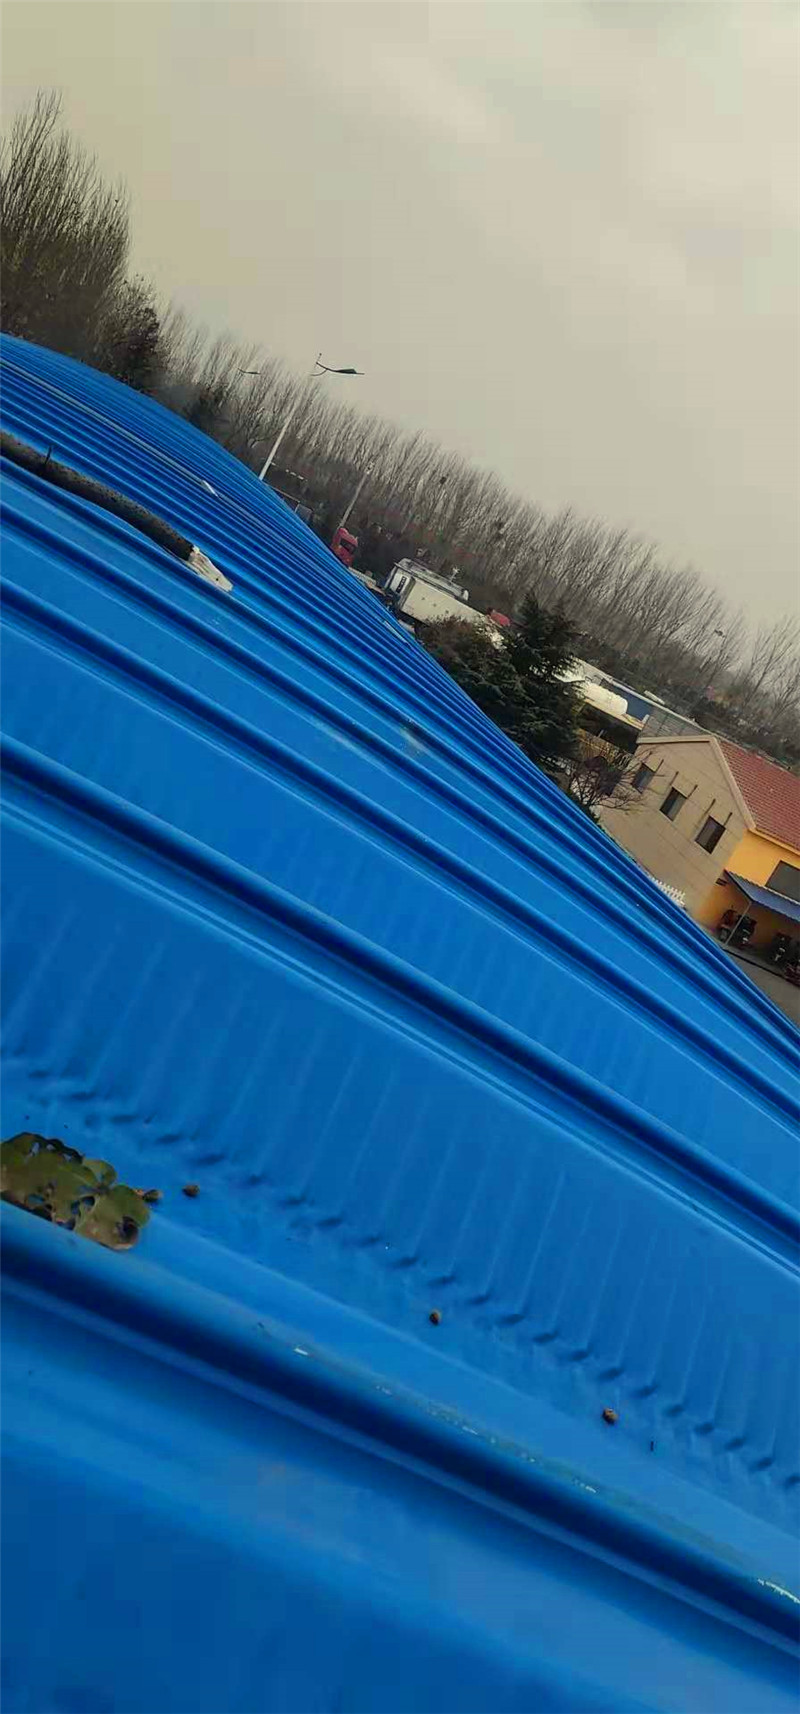 沈海高速胶州服务区拱形屋顶拆换工程2018-11-30 171908.jpg